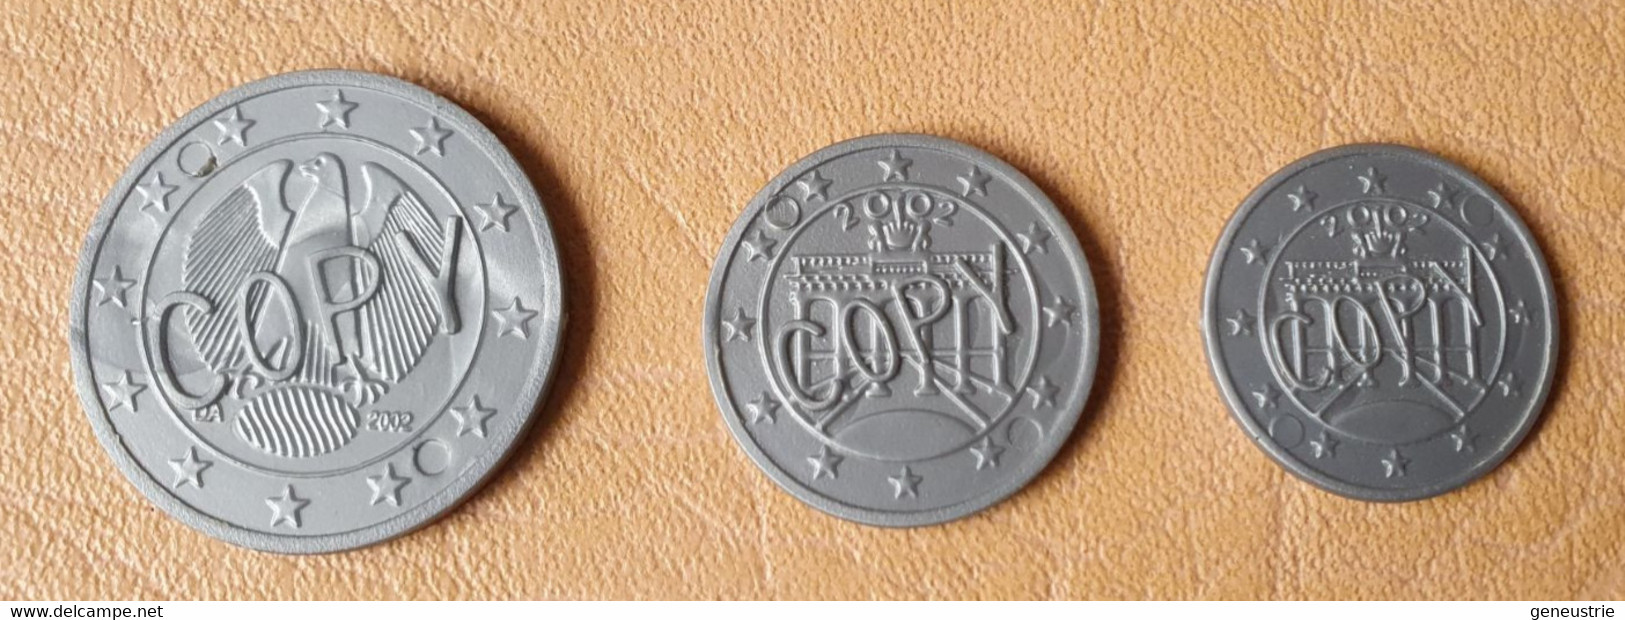 Lot De 3 Monnaies Plastique D'école En Euro "Copy" Allemagne - School Coins - Profesionales/De Sociedad